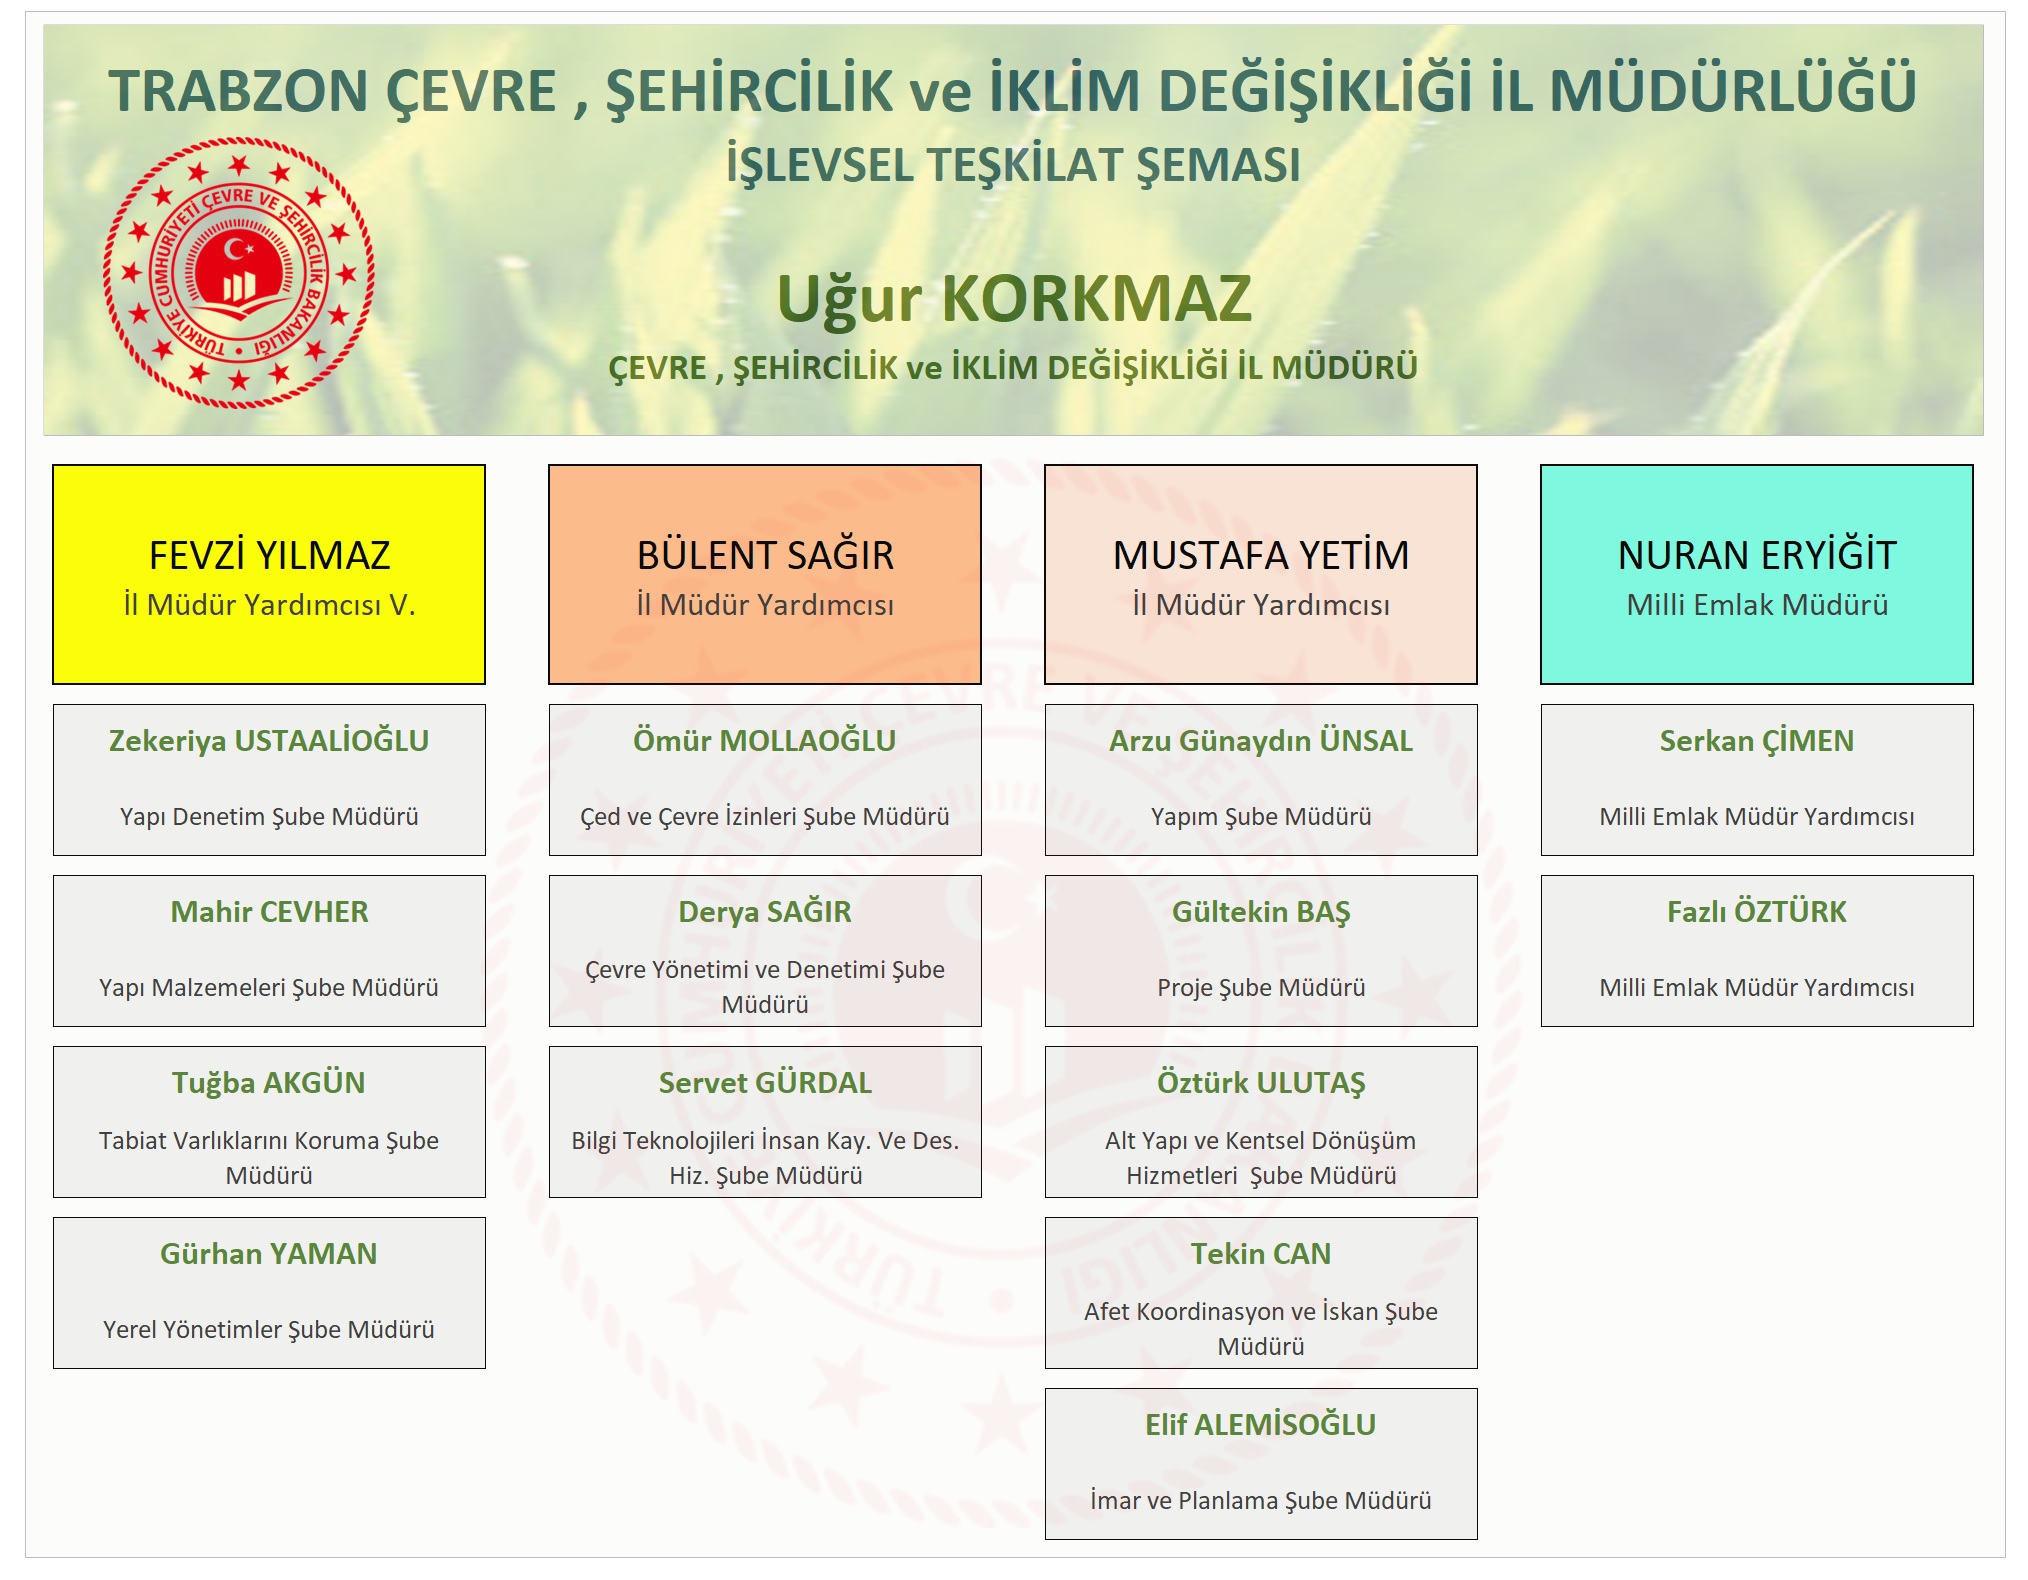 Trabzon Valiligi Cevre Ve Sehircilik Il Mudurlugu